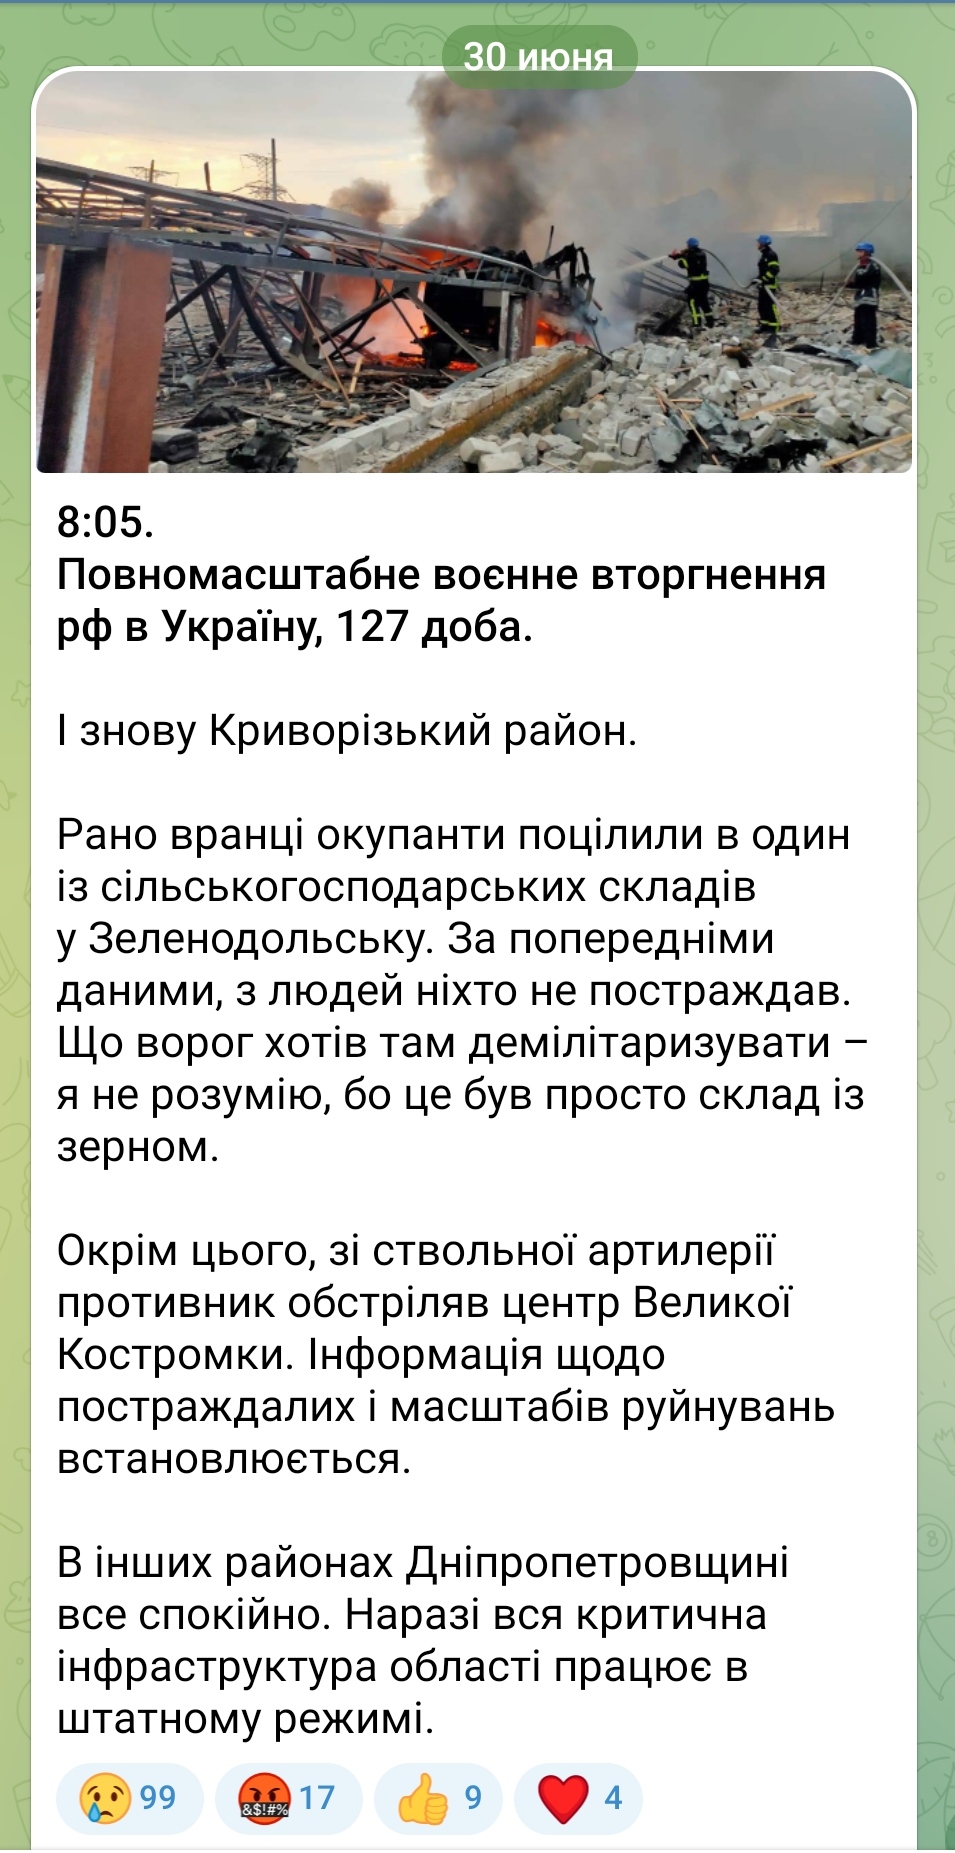 Вранці окупанти обстріляли один із сільськогосподарських складів у Зеленодольську